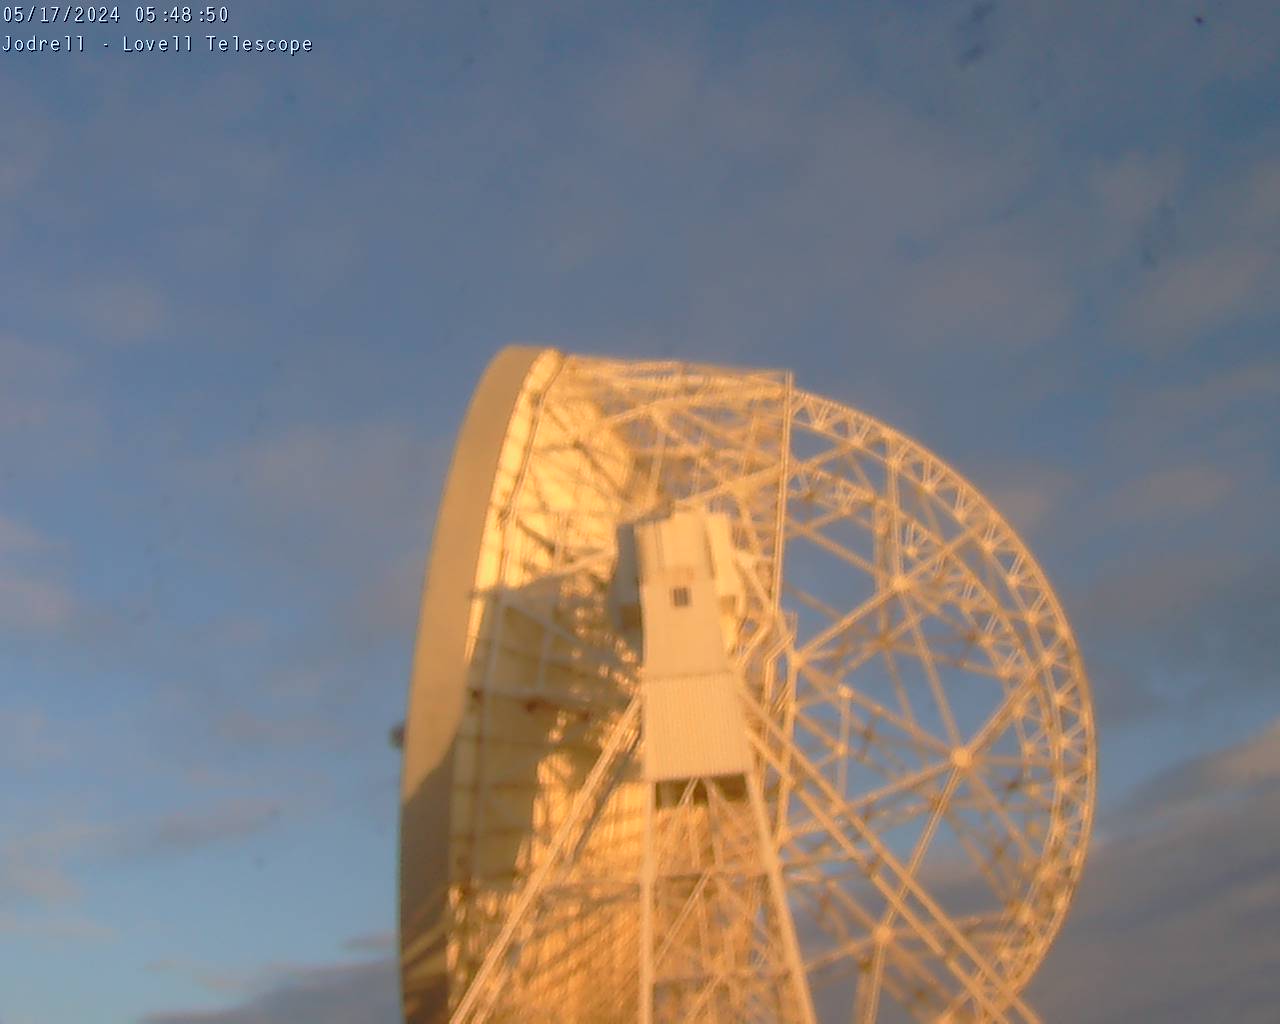 Observatorio Jodrell Bank Sáb. 05:49